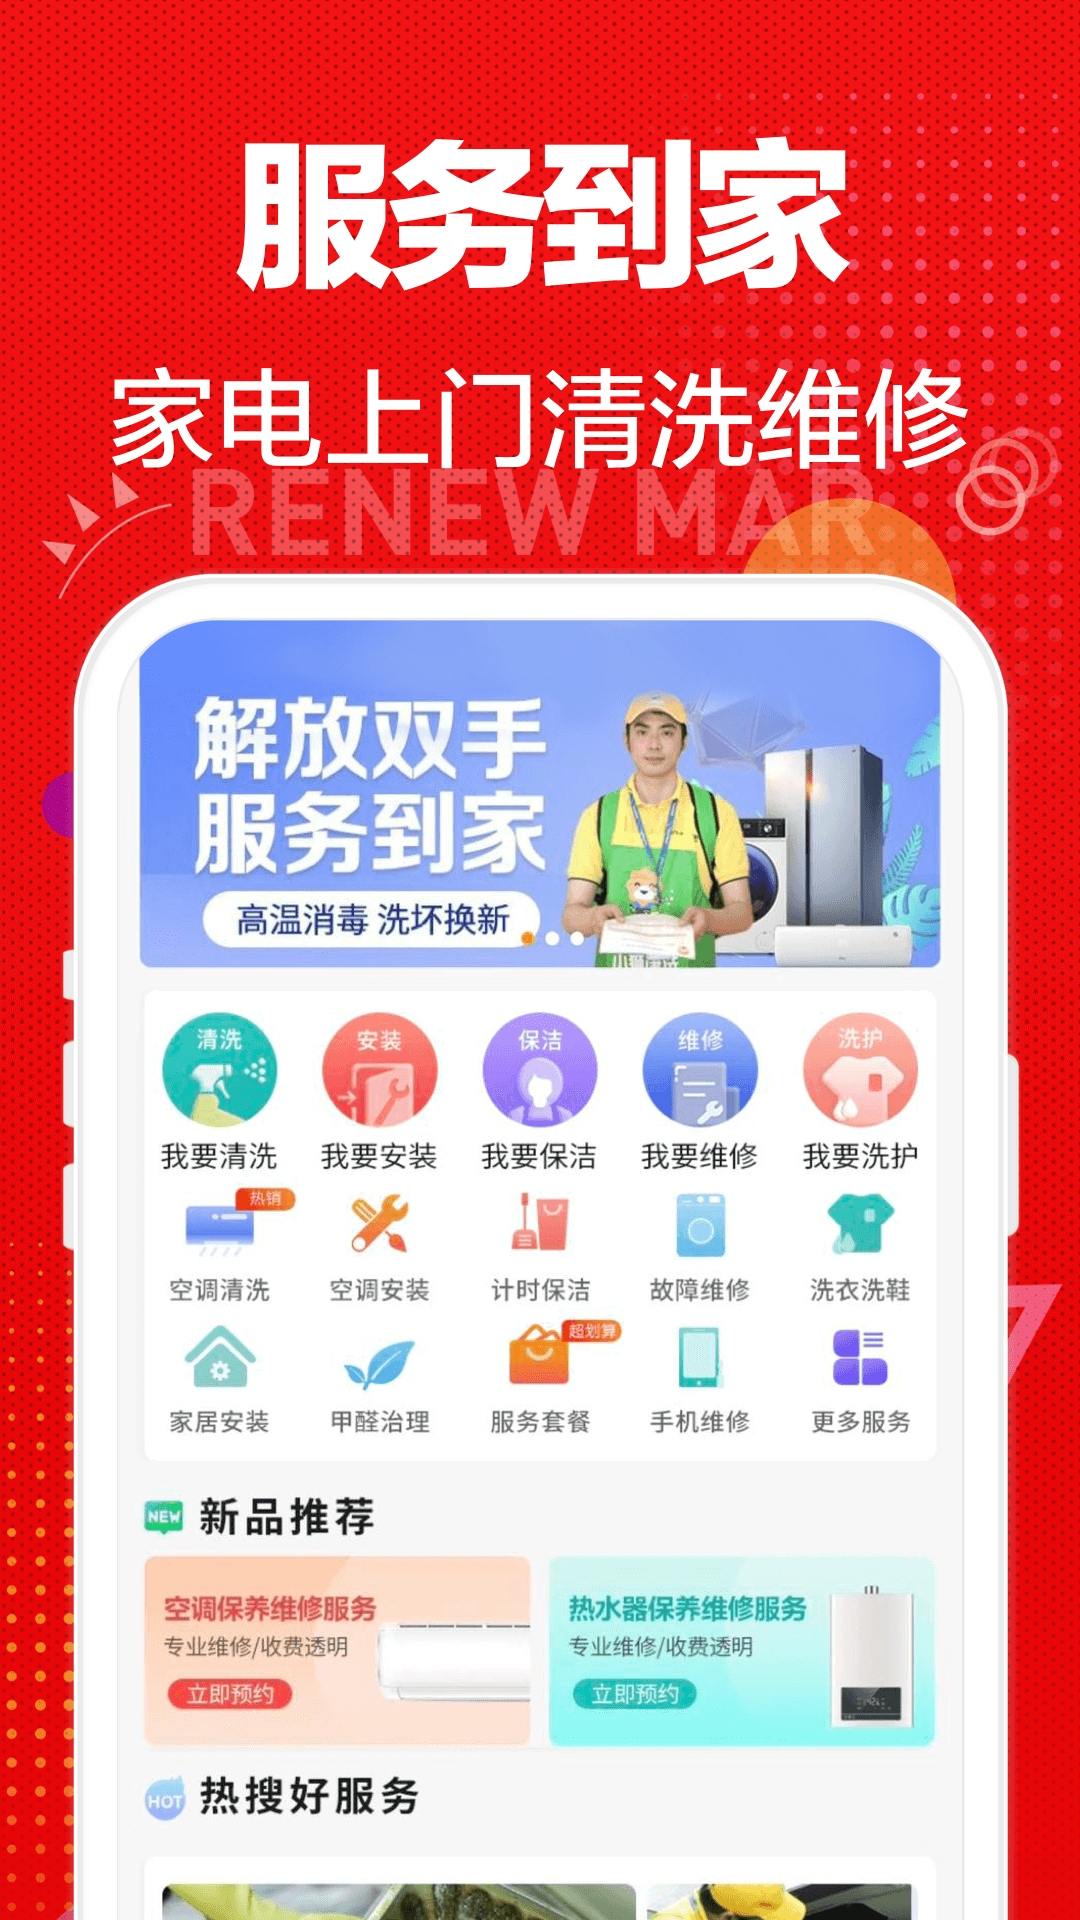 苏宁易购app安卓版下载